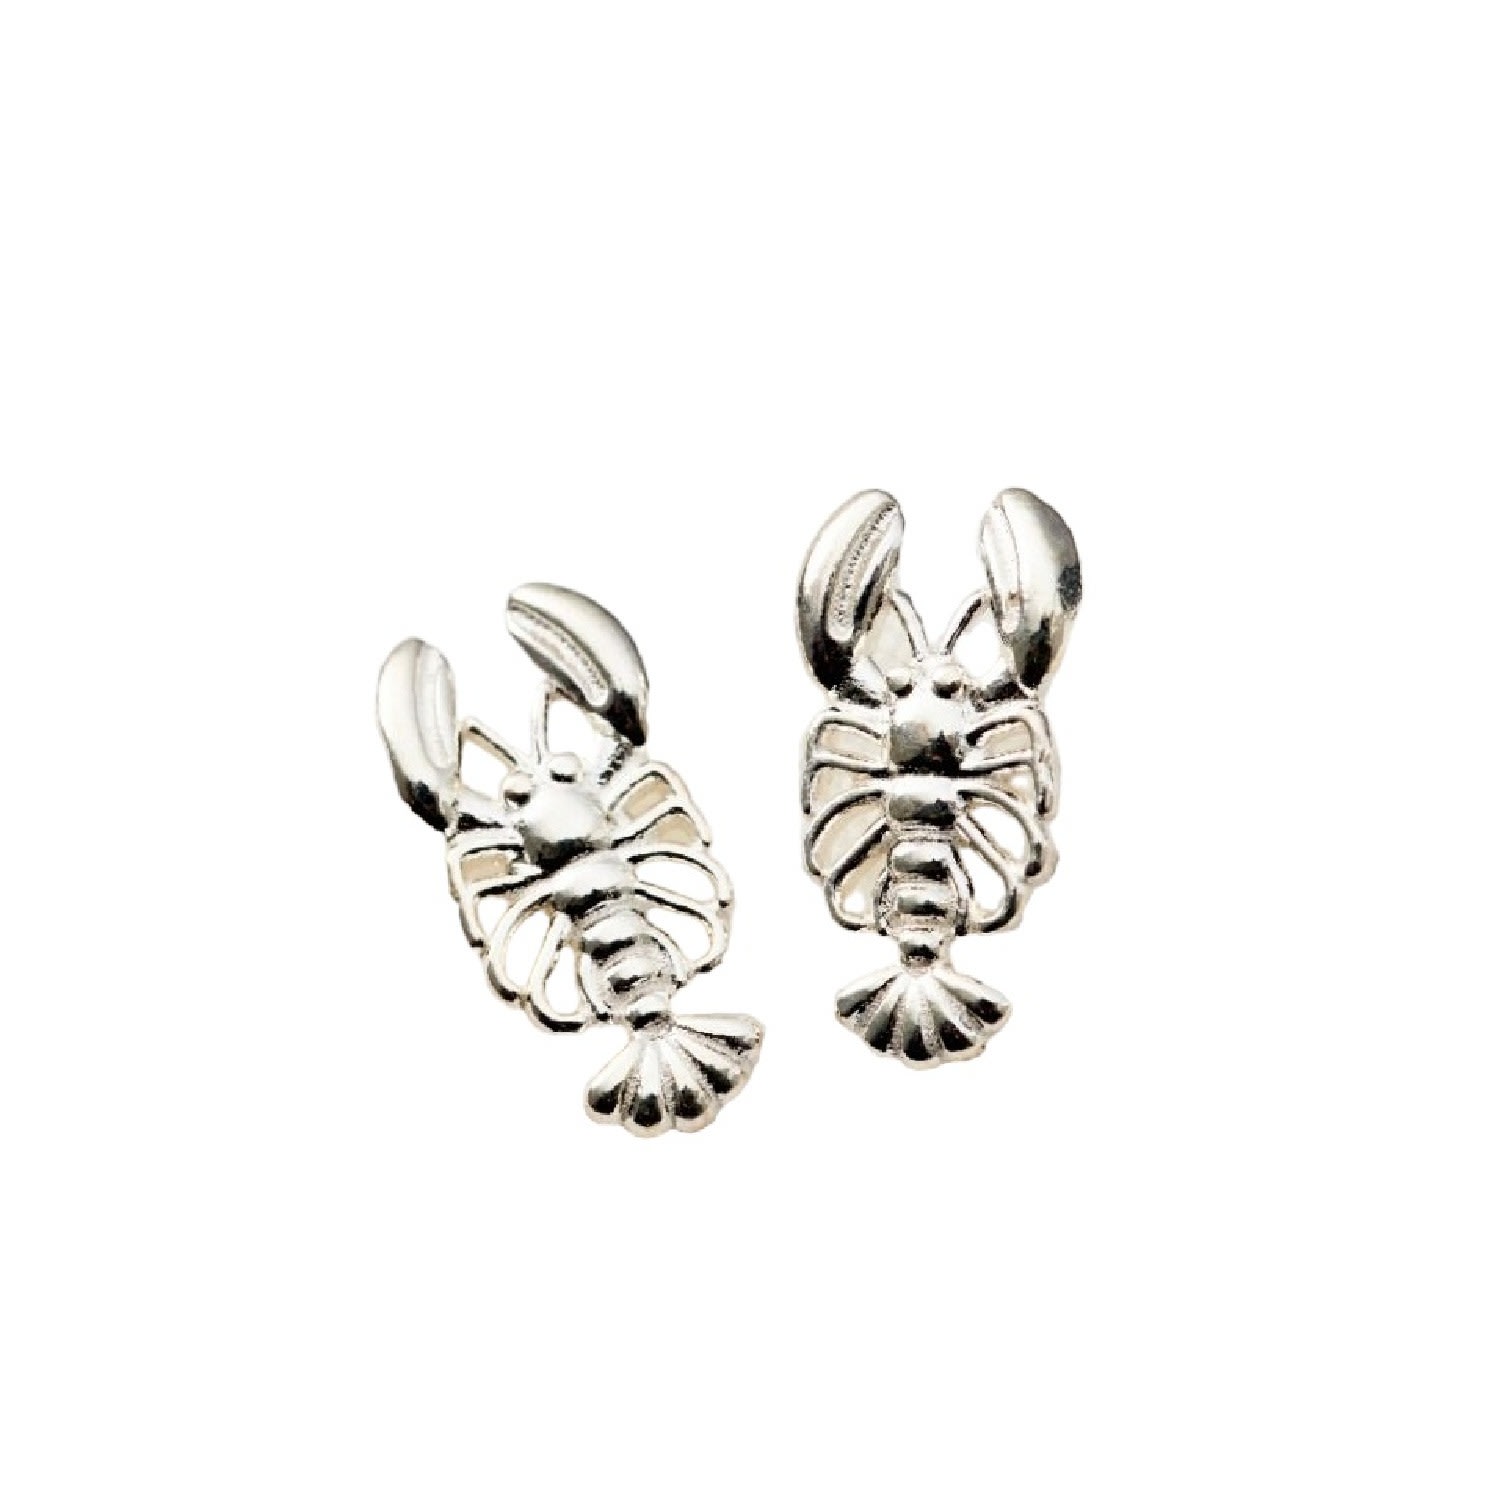 Posh Totty Designs Women's Sterling Silver Lobster Stud Earrings